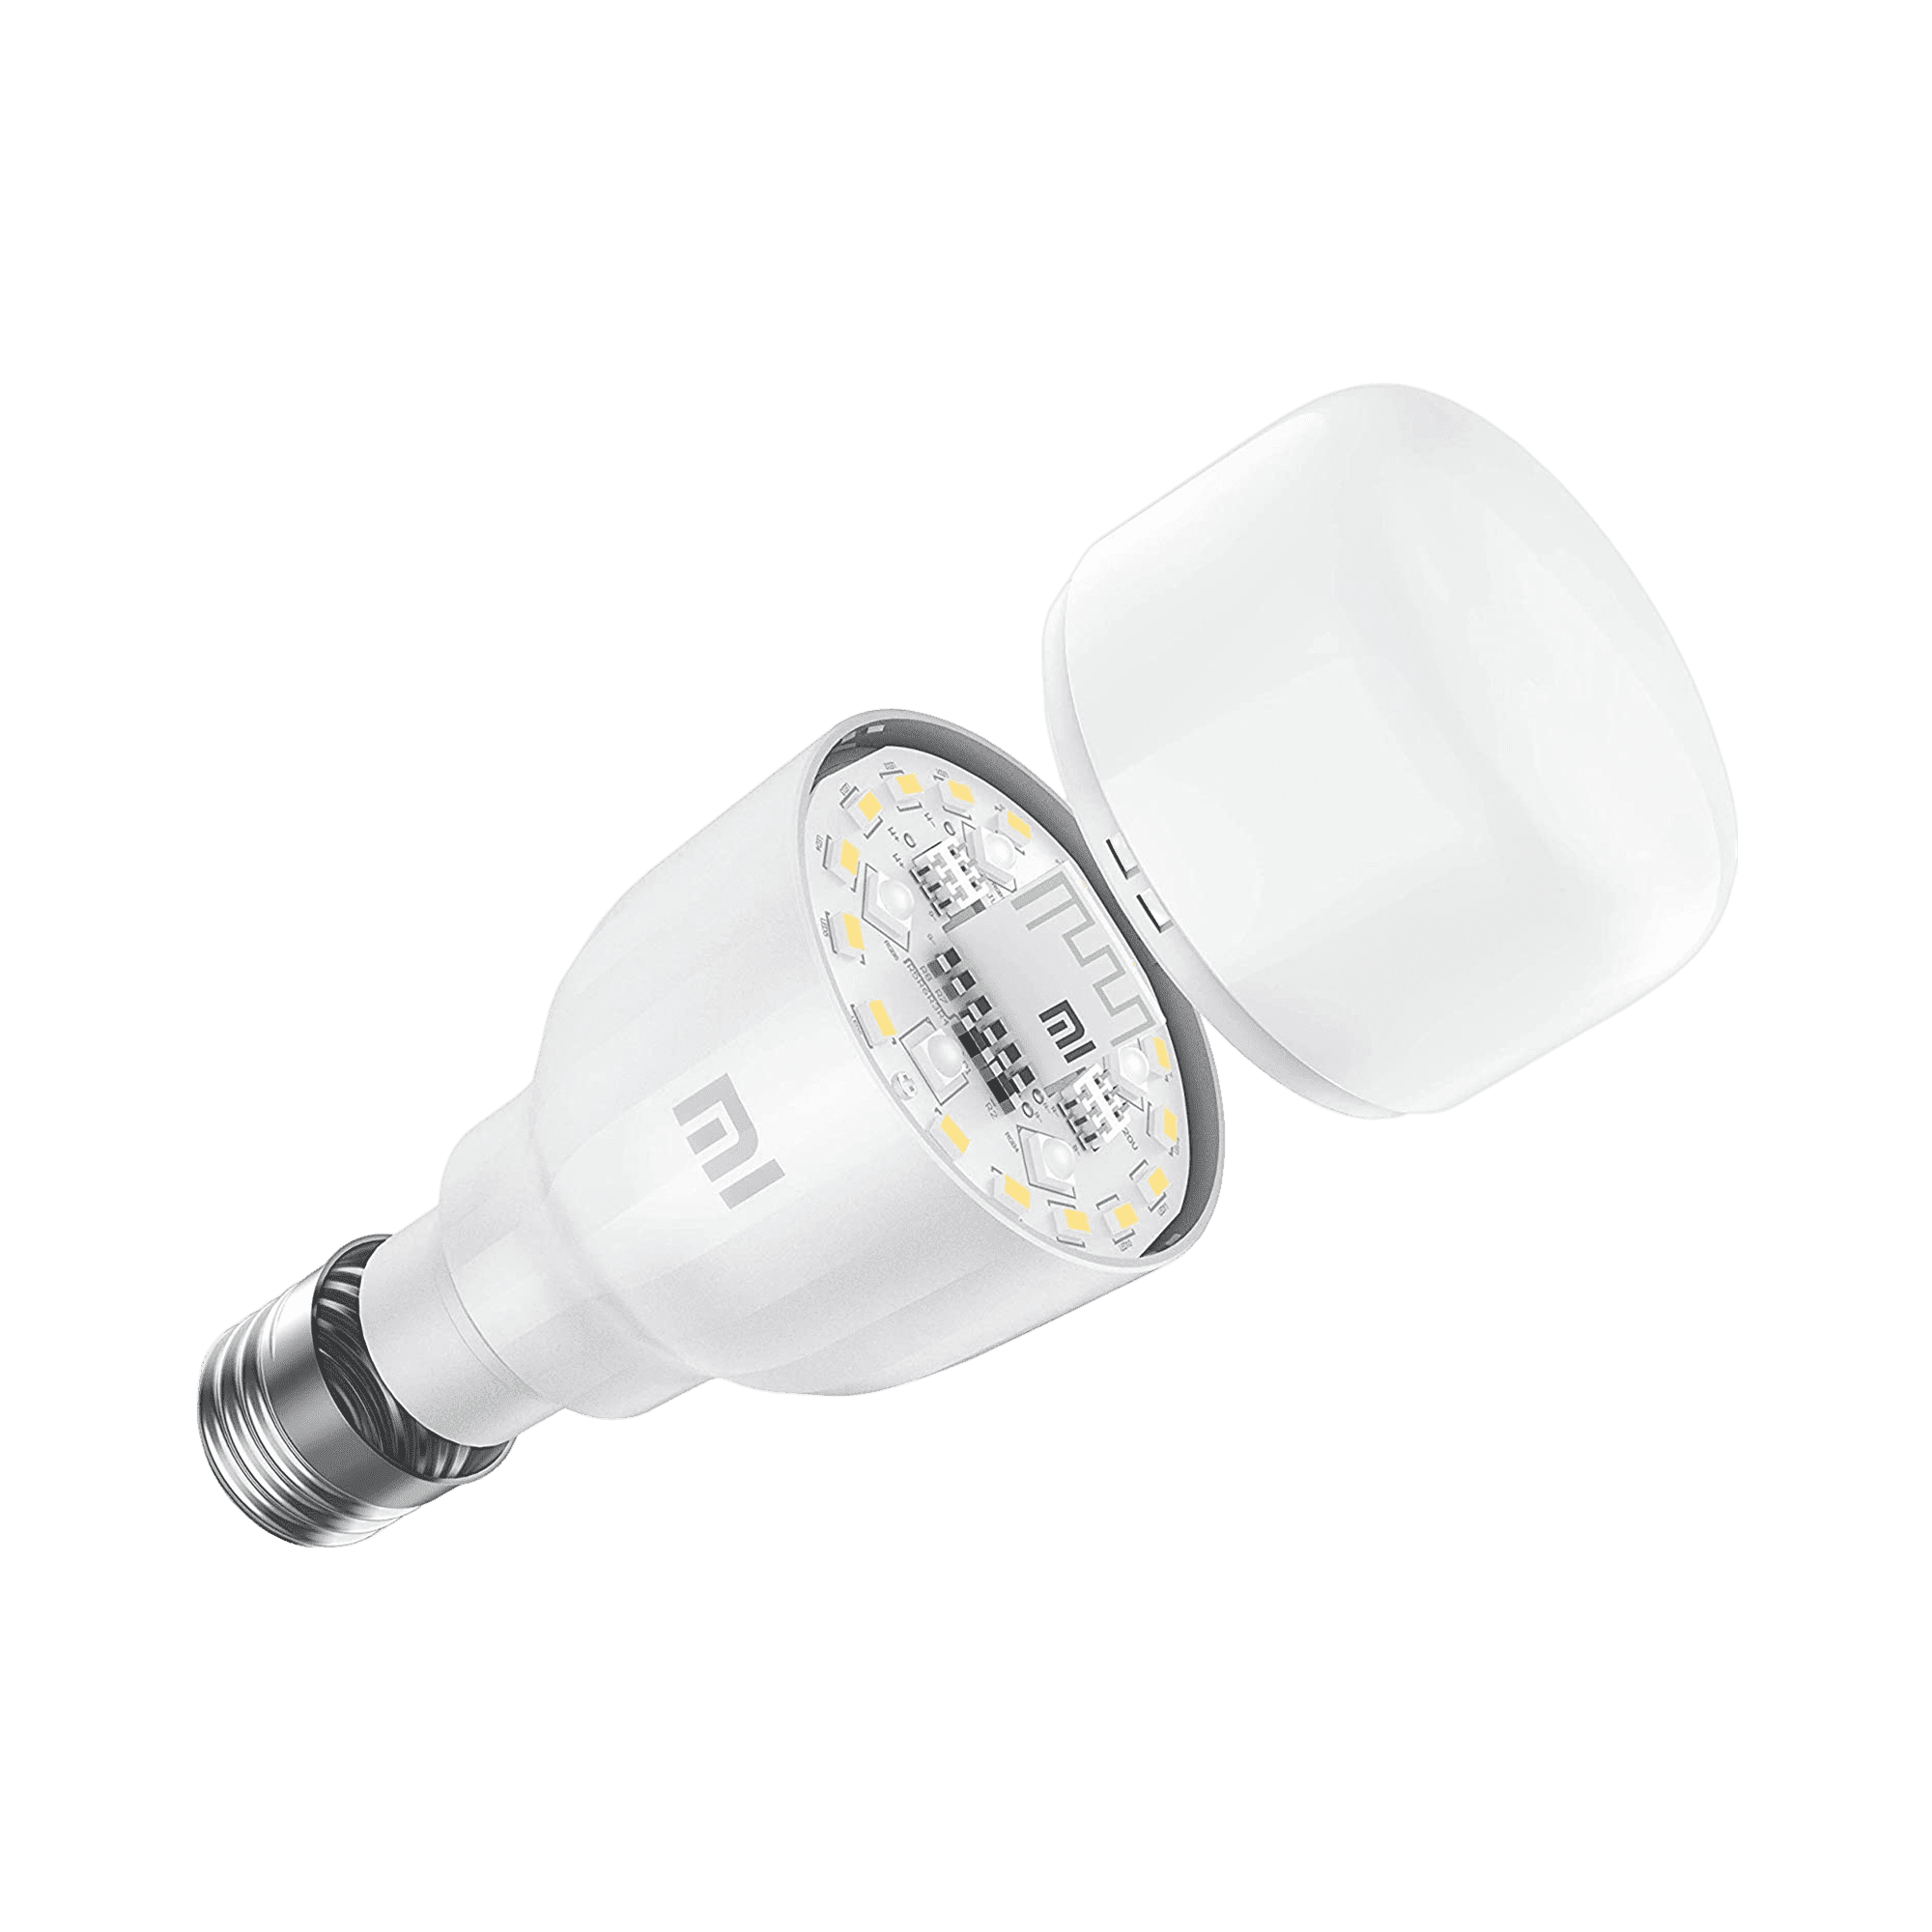 Mi LED Smart Bulb Essential (blanc et couleurs) - Leader au Maroc